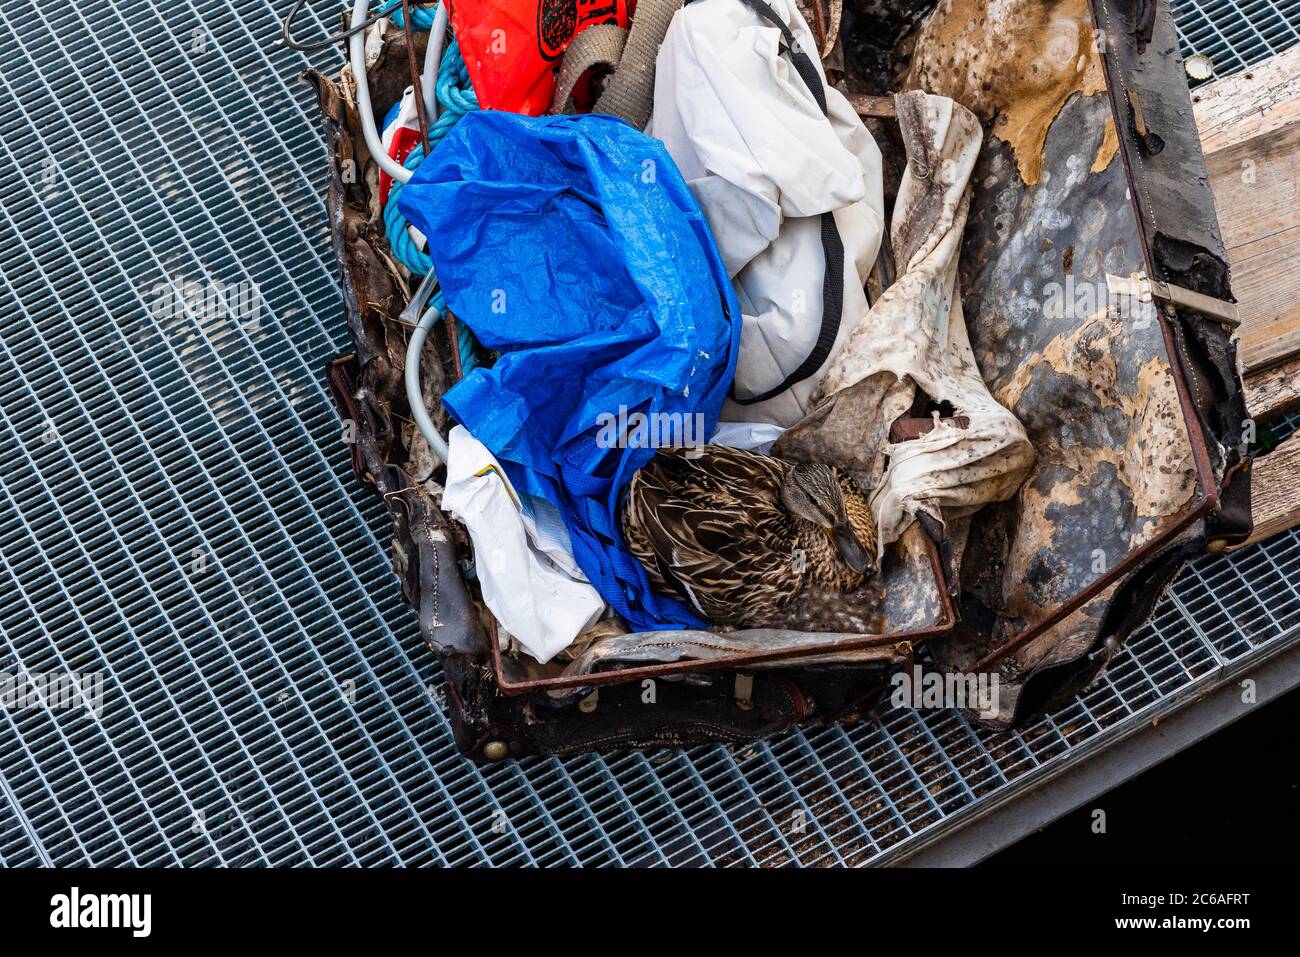 Eine Ente brütet in einem alten Koffer voller Müll, Suchbild, Koffer voller  Müll und eine Ente Stockfotografie - Alamy